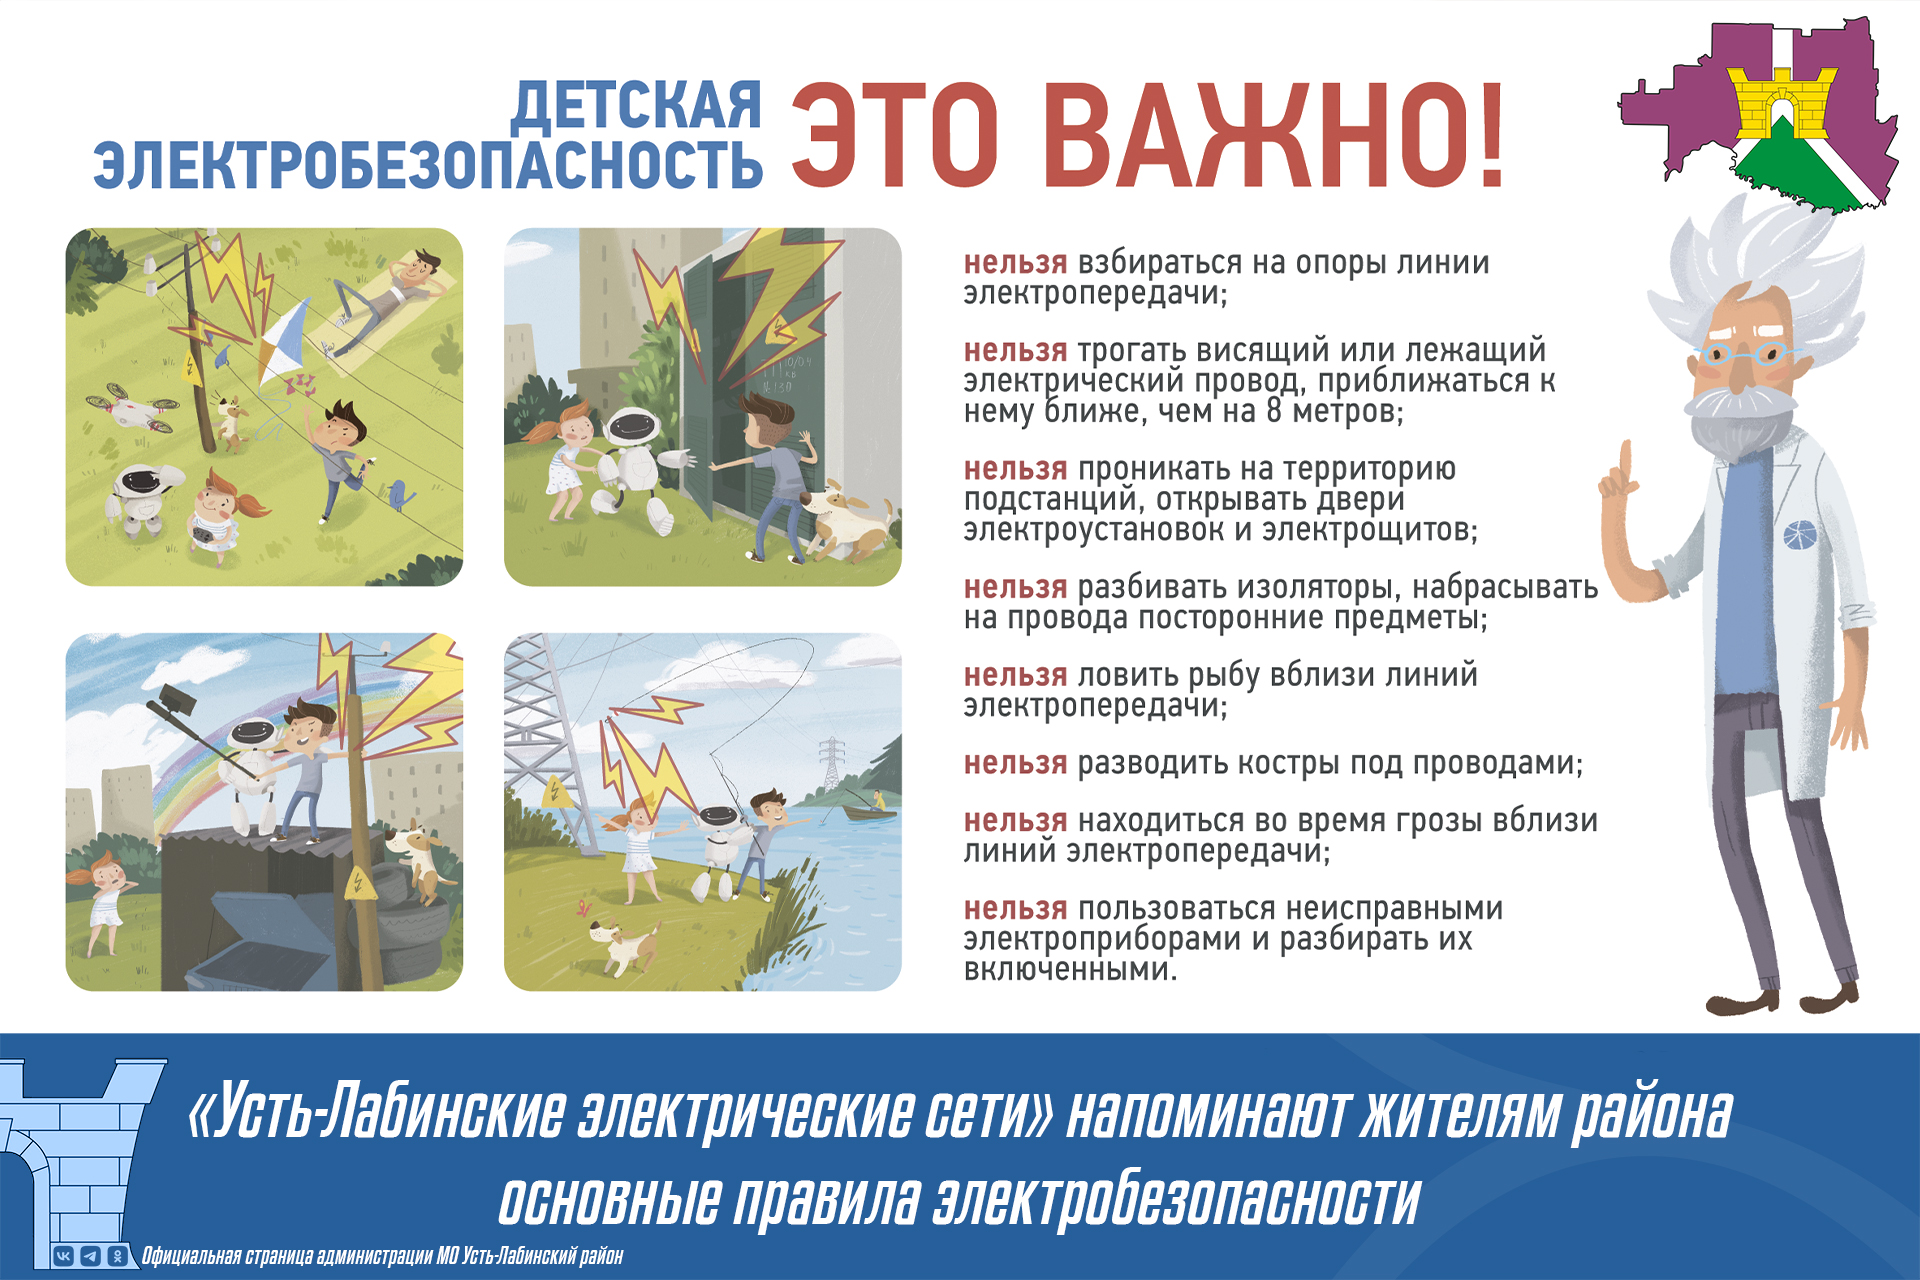 «Усть-Лабинские электрические сети» напоминают жителям района основные правила электробезопасности